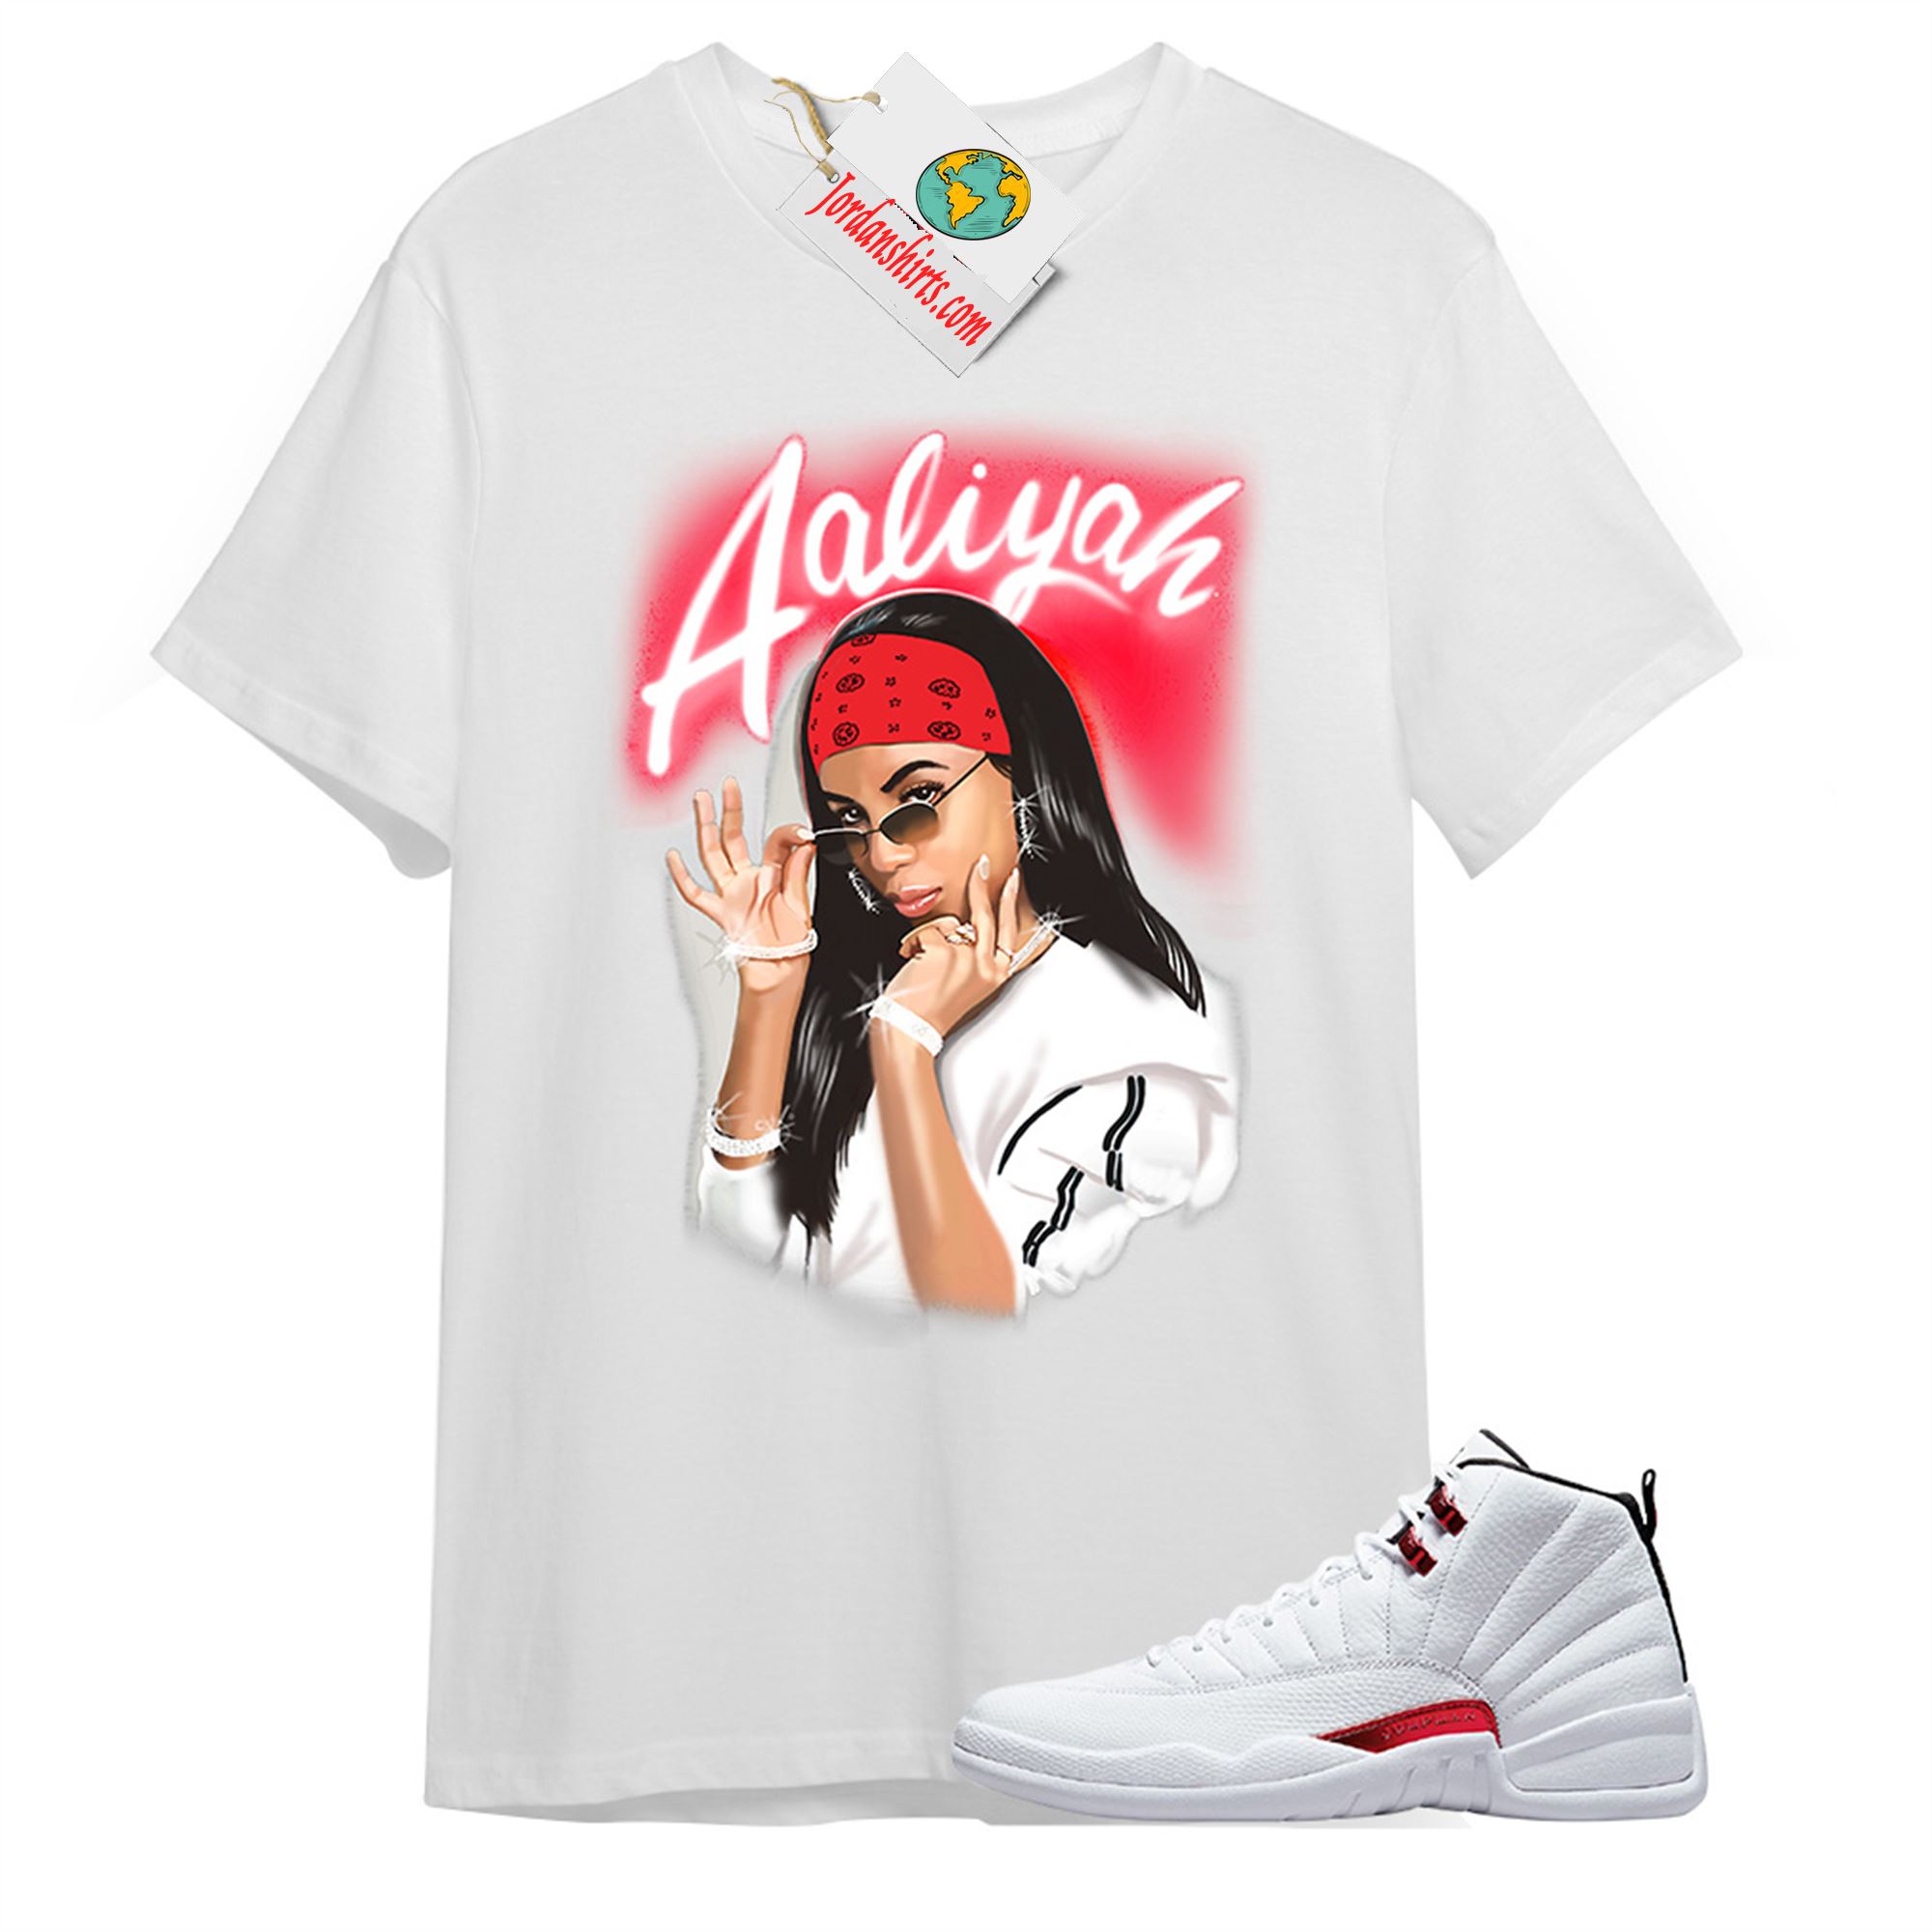 Jordan 12 Shirt, Aaliyah Airbrush White T-shirt Air Jordan 12 Twist 12s Plus Size Up To 5xl